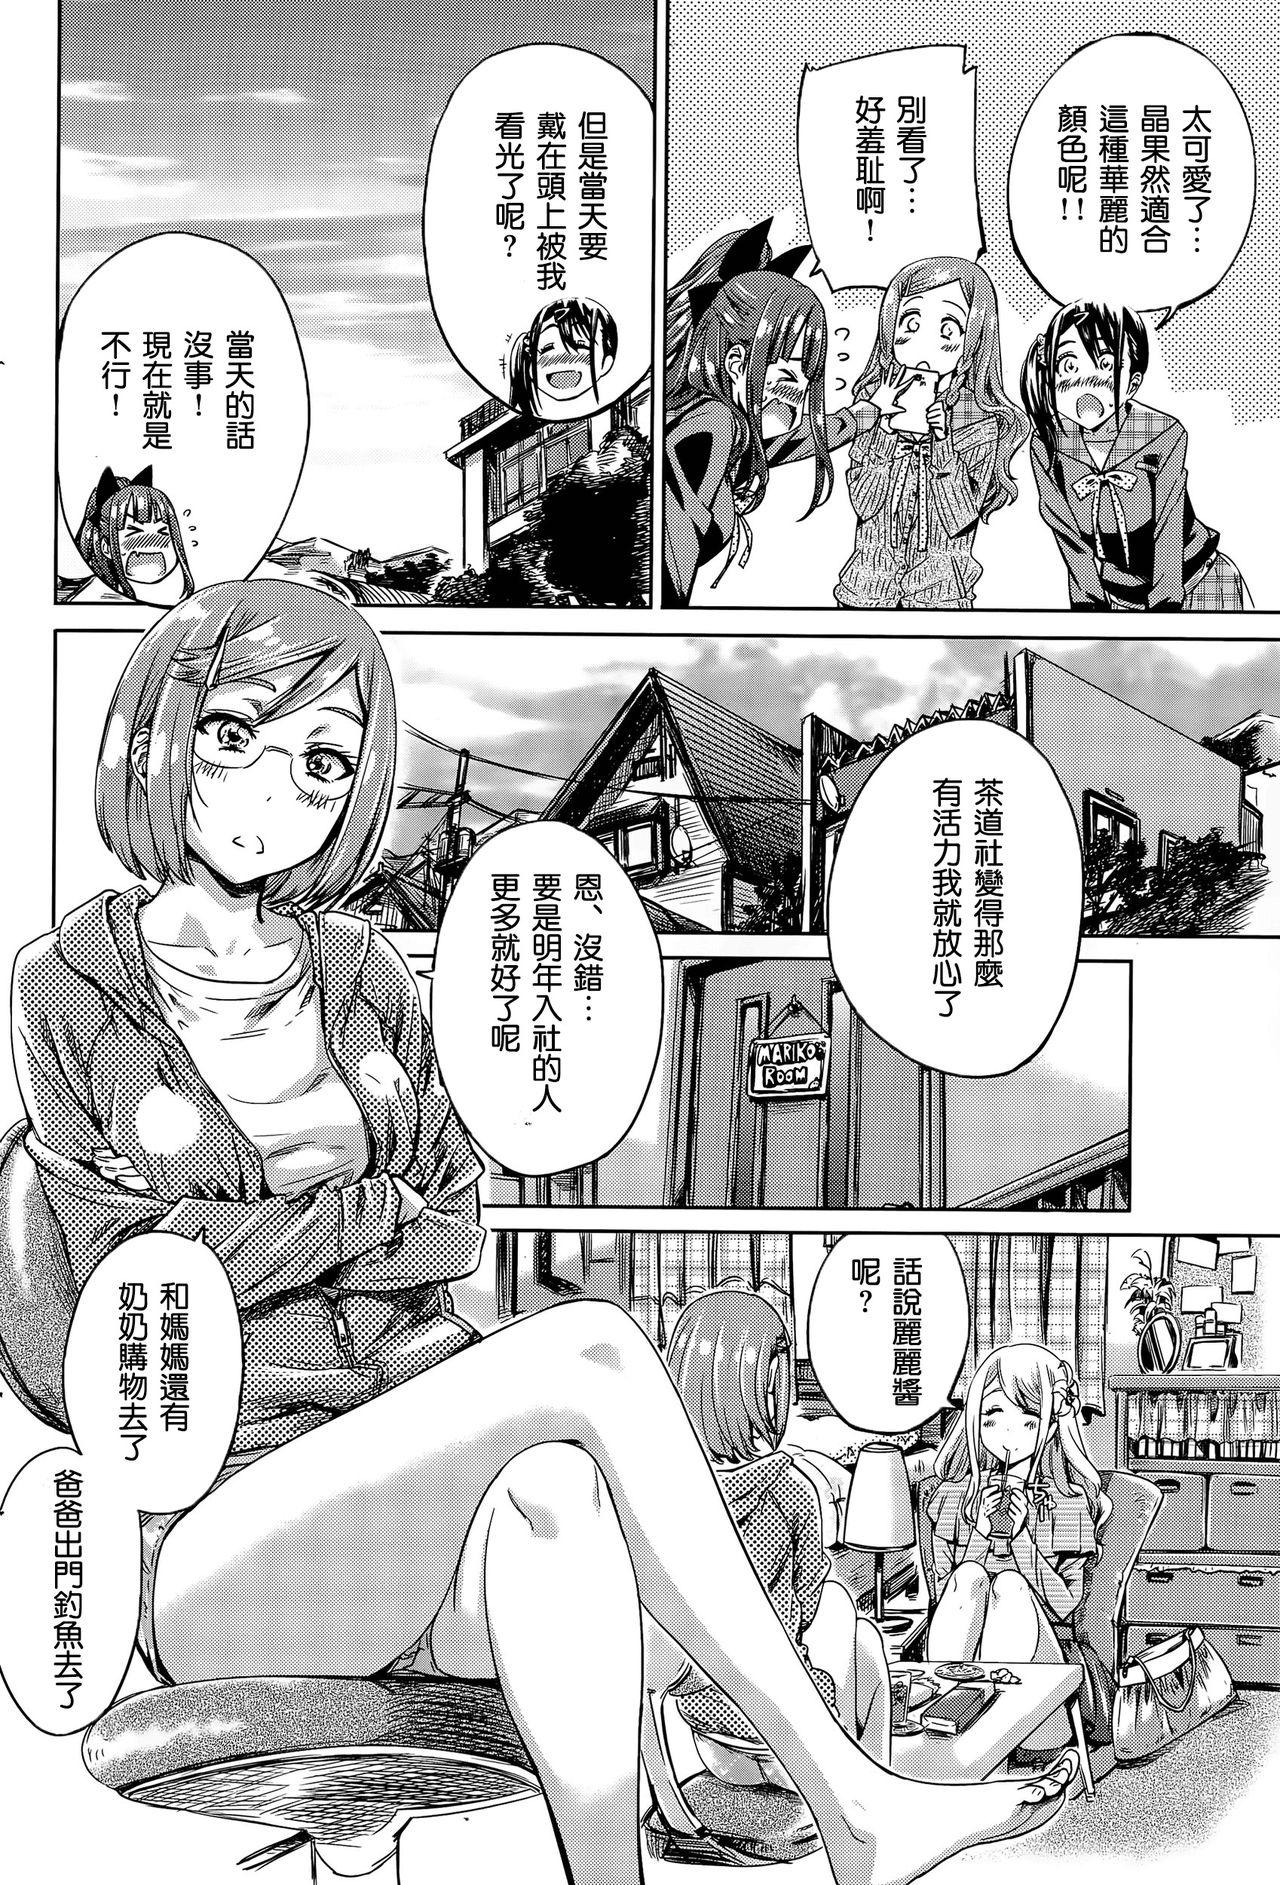 Suck Cock Nadeshiko Hiyori #5 Clit - Page 9